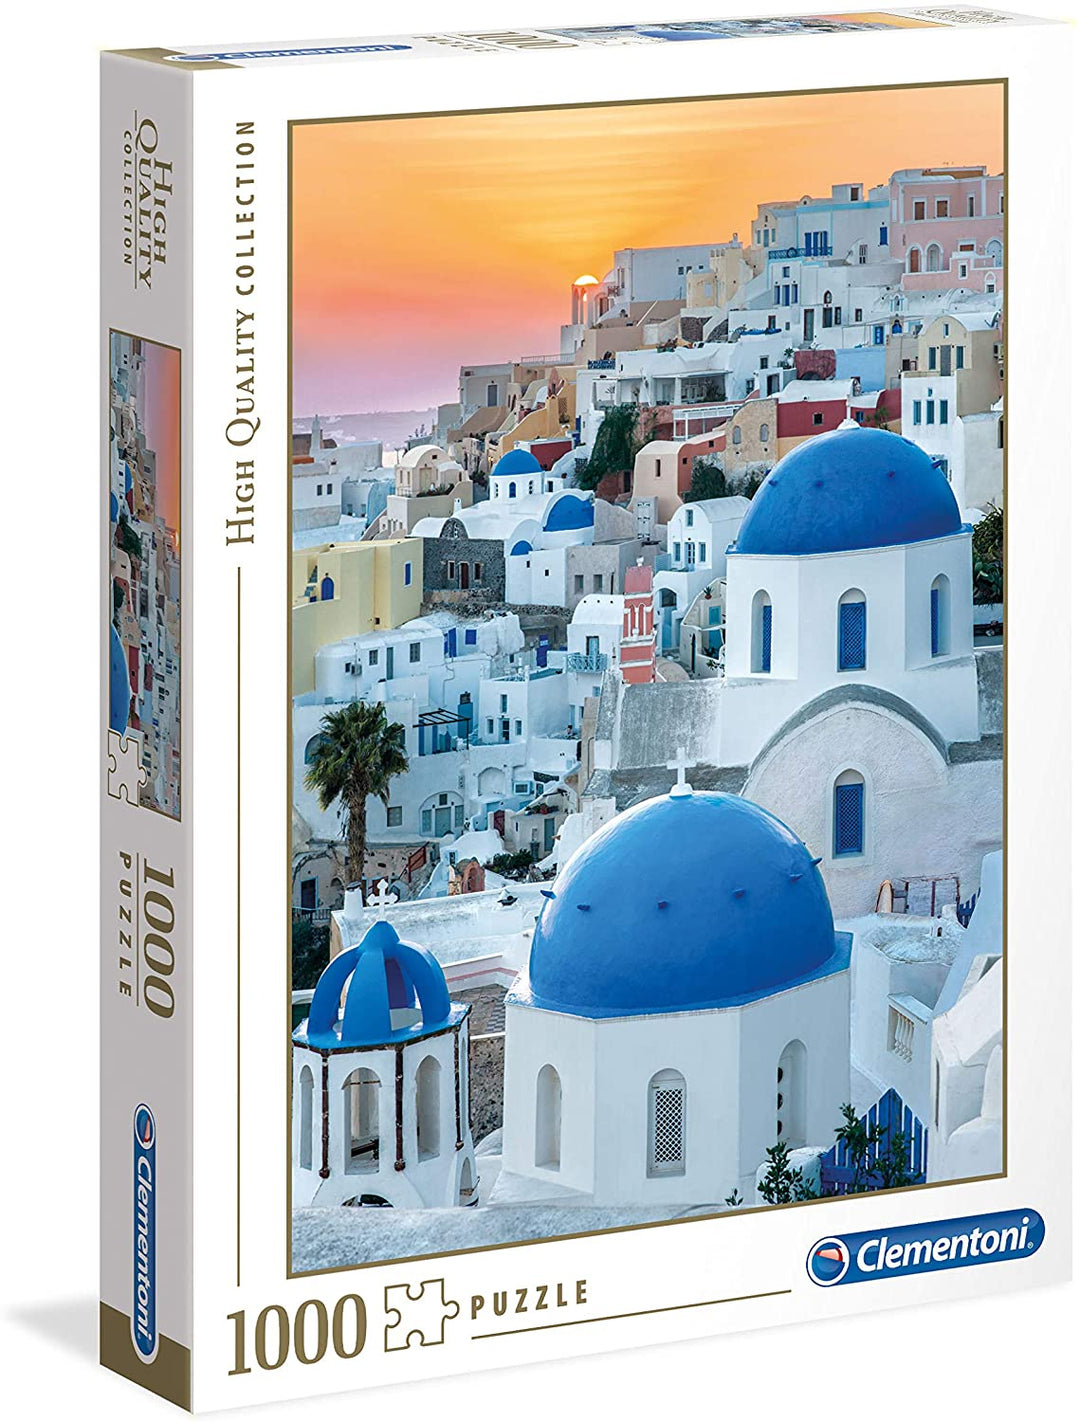 Clementoni 39480 Collectiepuzzel voor volwassenen en kinderen-Santorini-1000 stukjes